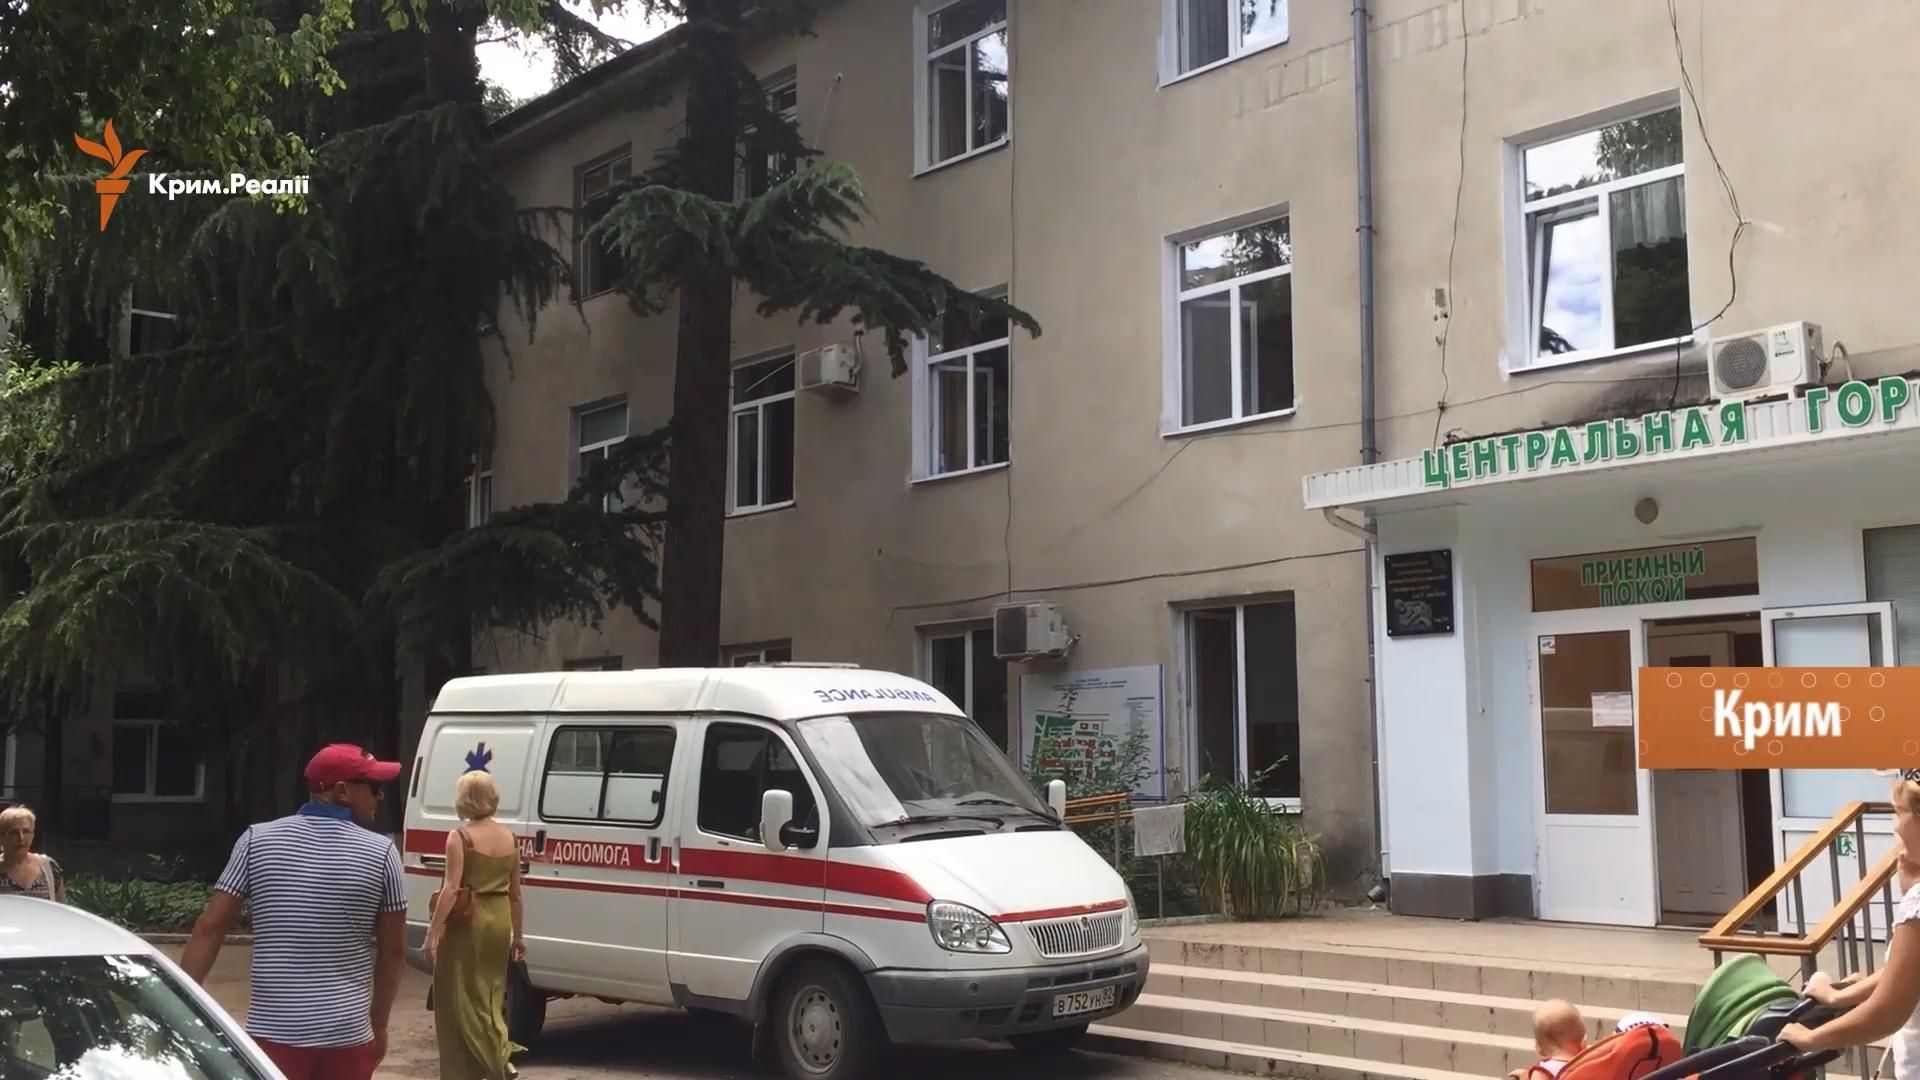 Як окупаційна влада знищує медицину в Криму